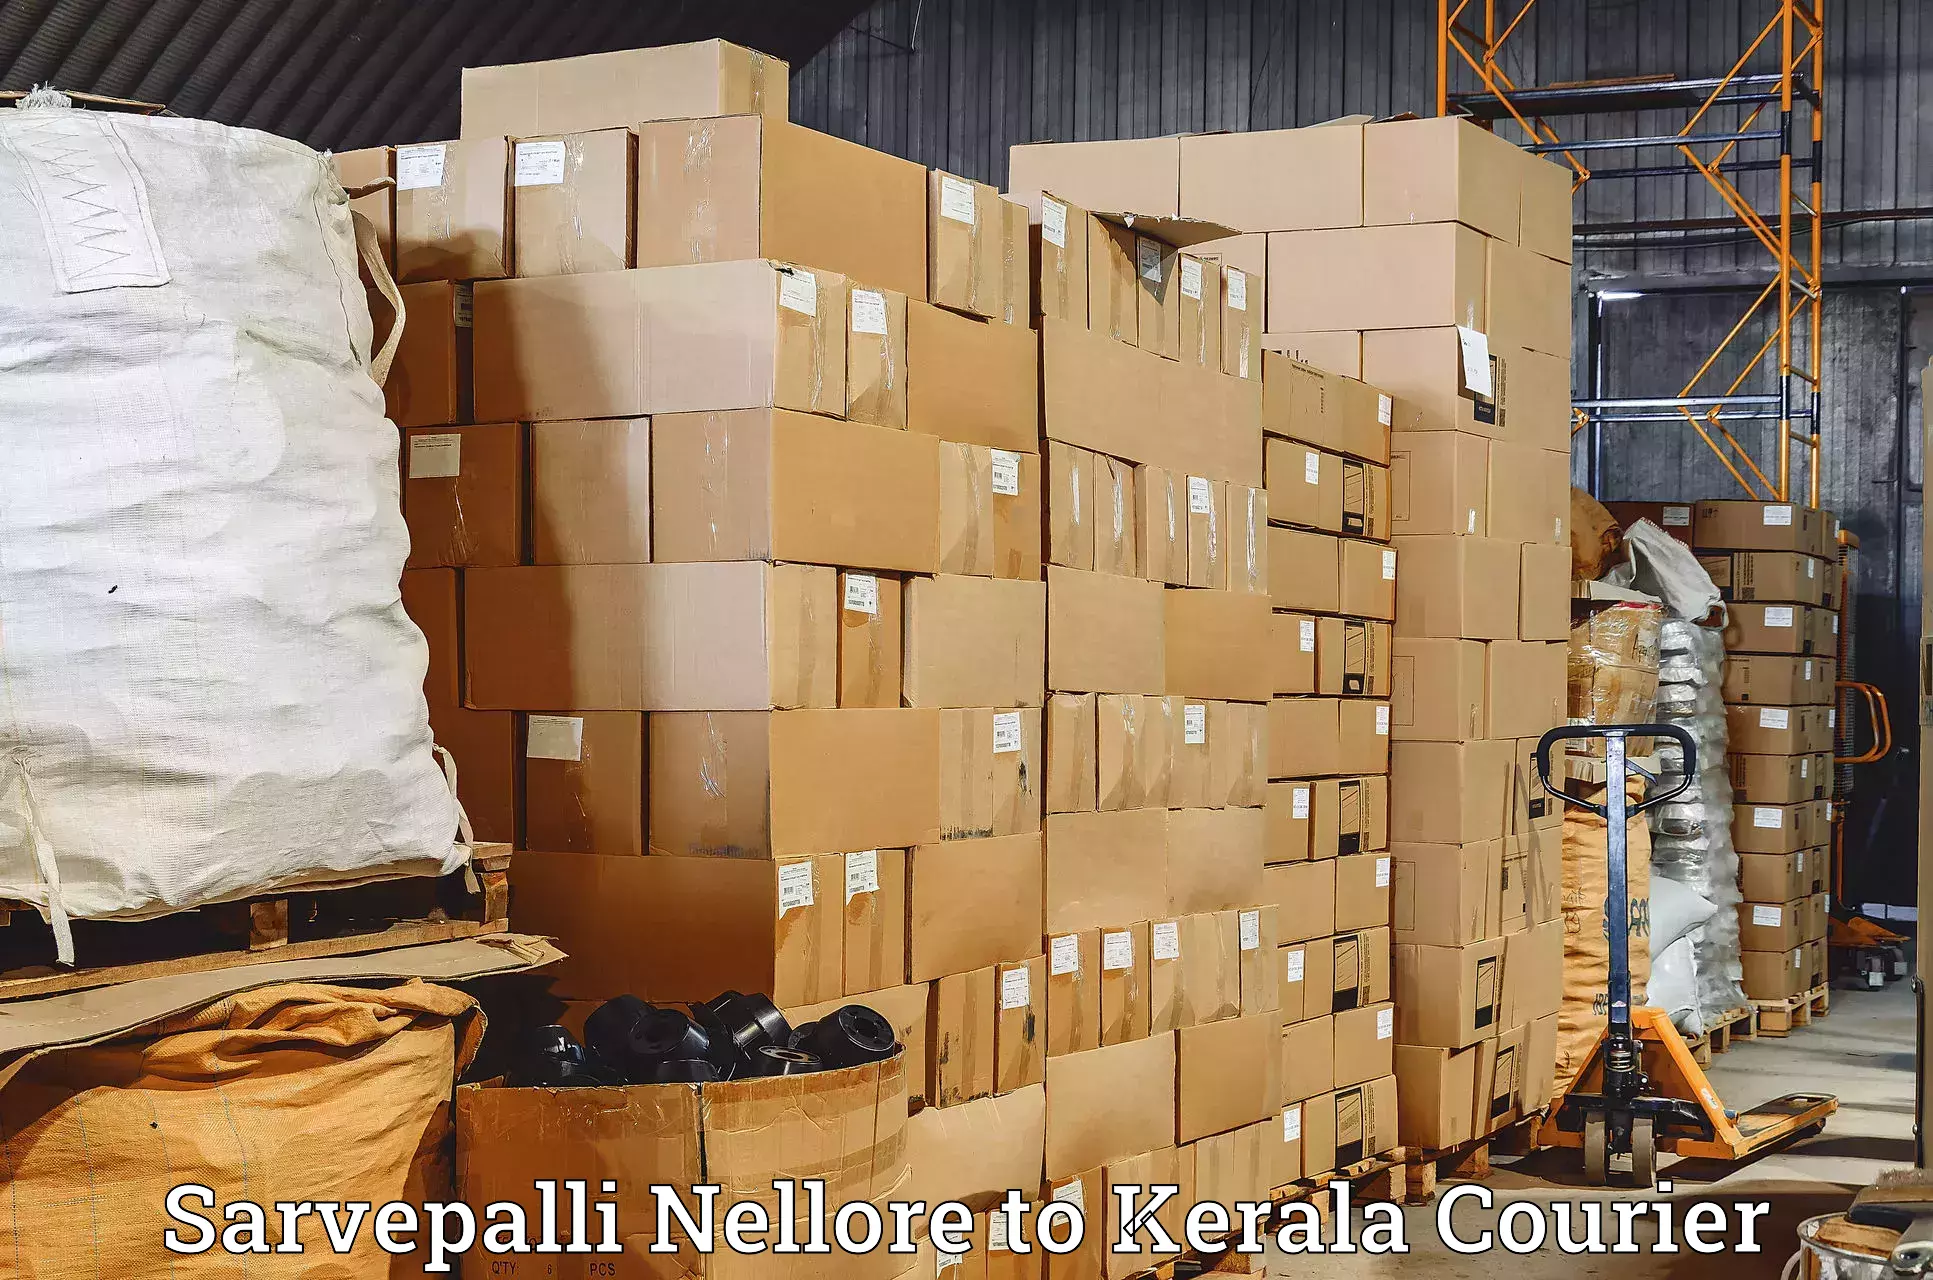 Reliable courier service Sarvepalli Nellore to Cochin Port Kochi